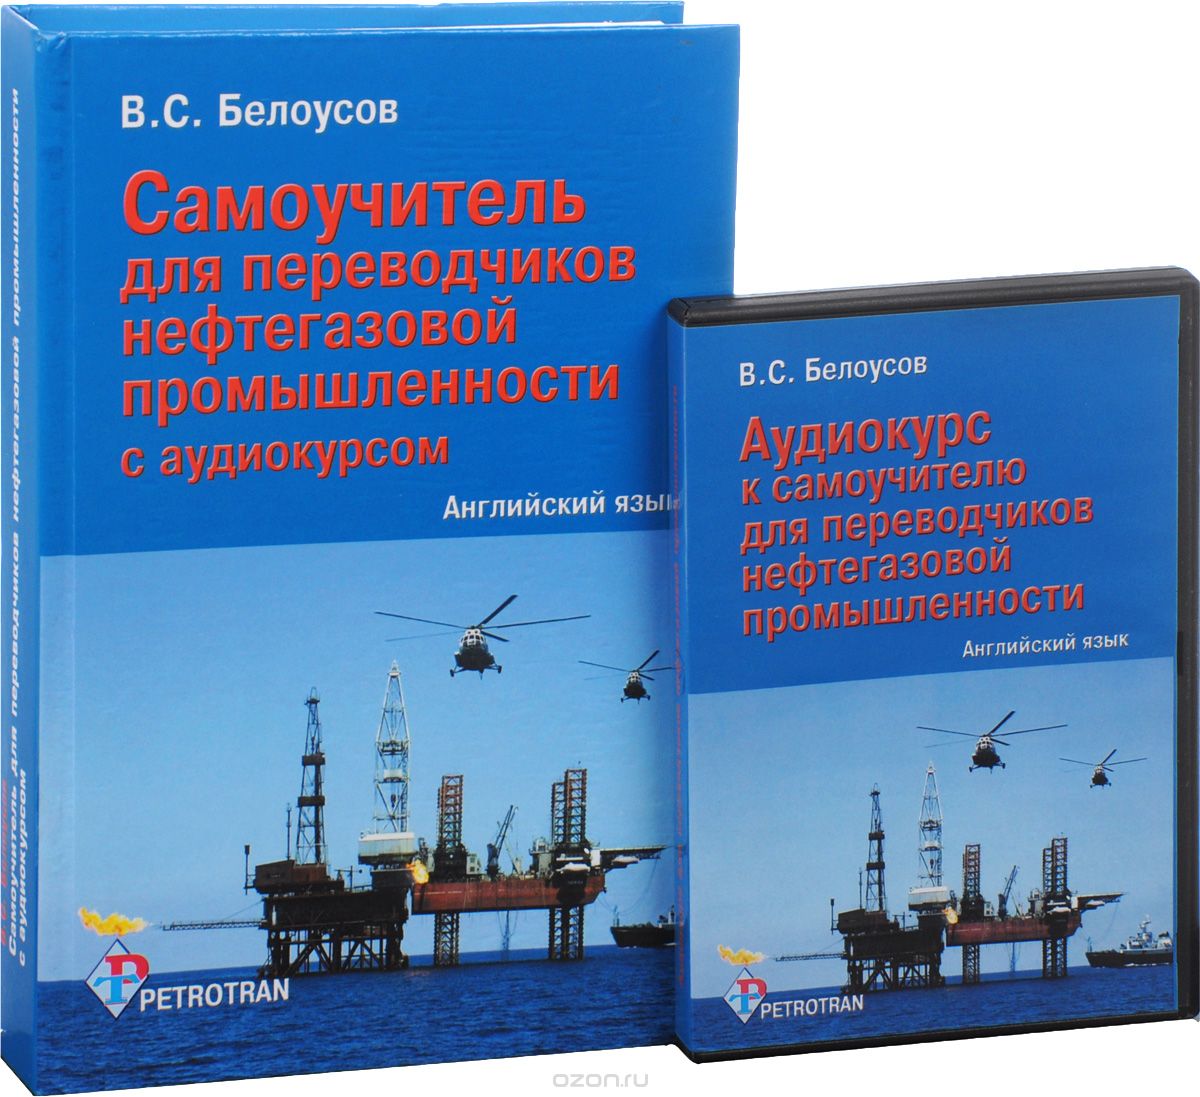 Скачать книгу "Английский язык. Самоучитель для переводчиков нефтегазовой промышленности с аудиокурсом (+ CD-ROM), В. С. Белоусов"